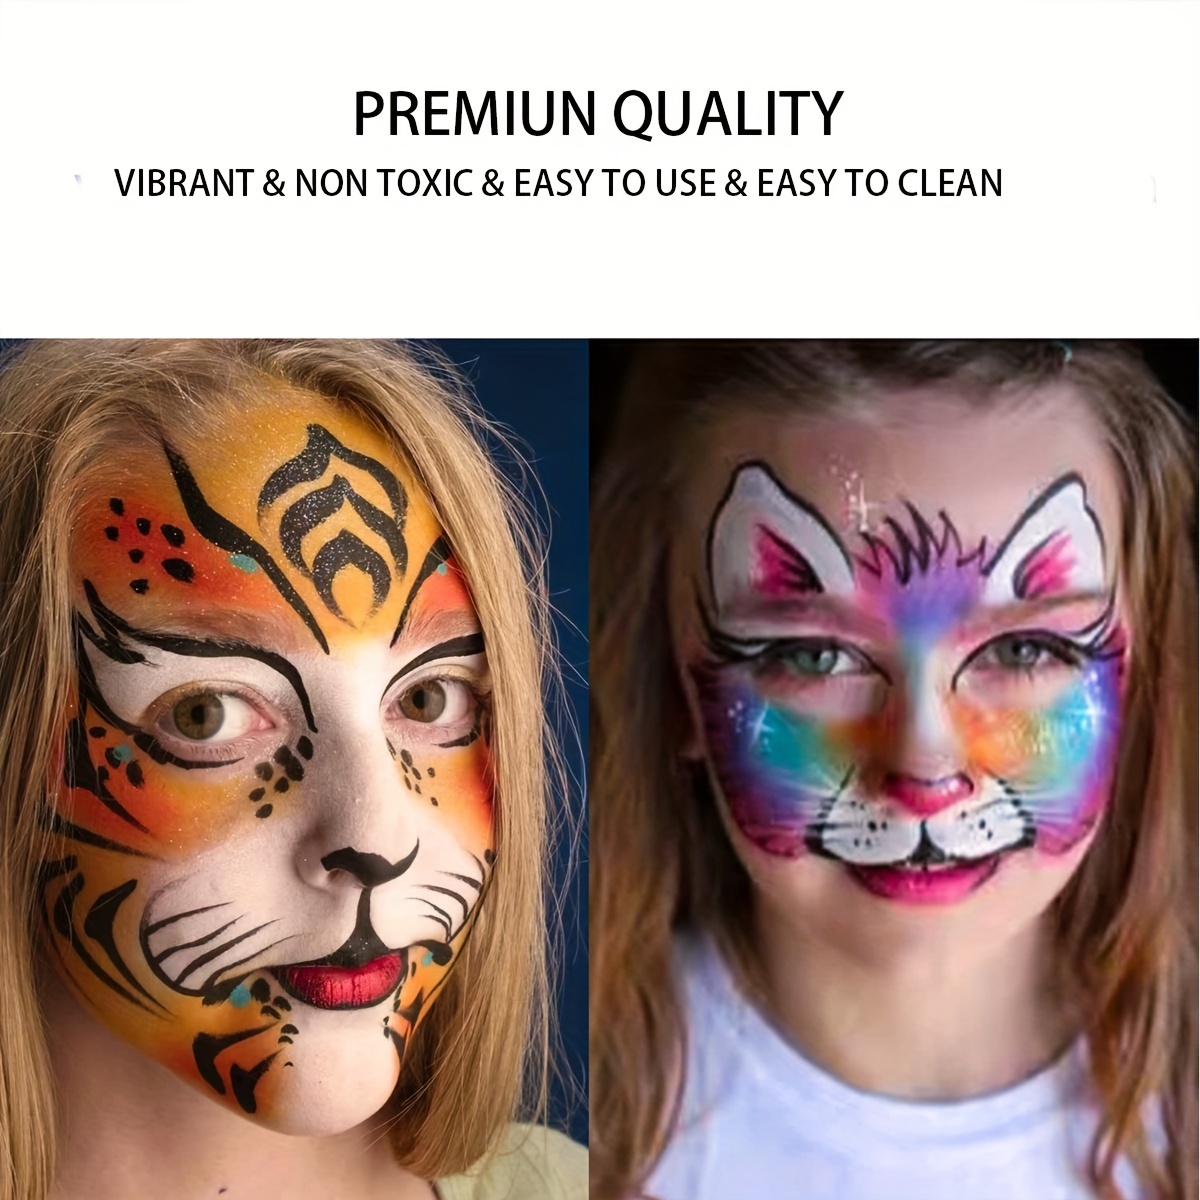  Pintura facial y corporal – Pintura facial de arcoíris de  Halloween para adultos y niños que brilla en la oscuridad, pintura  fluorescente neón que brilla en la oscuridad, suministros de fiesta